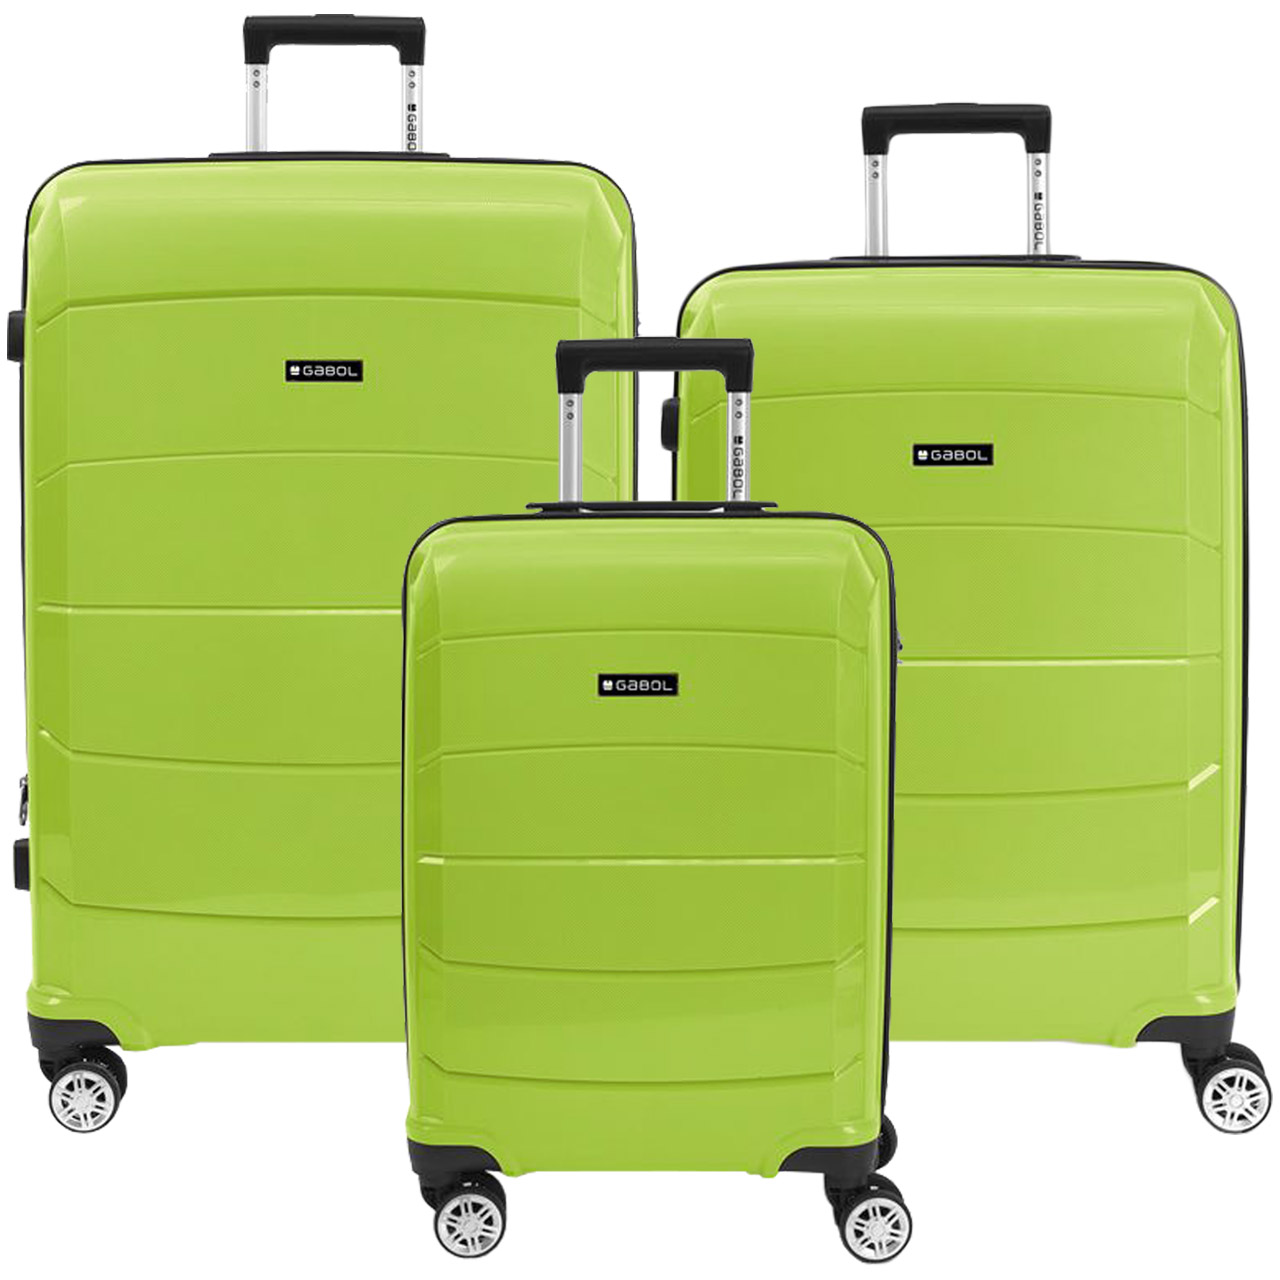 نکته خرید - قیمت روز مجموعه 3 عددی چمدان گابل مدل MIDORI - 123 خرید